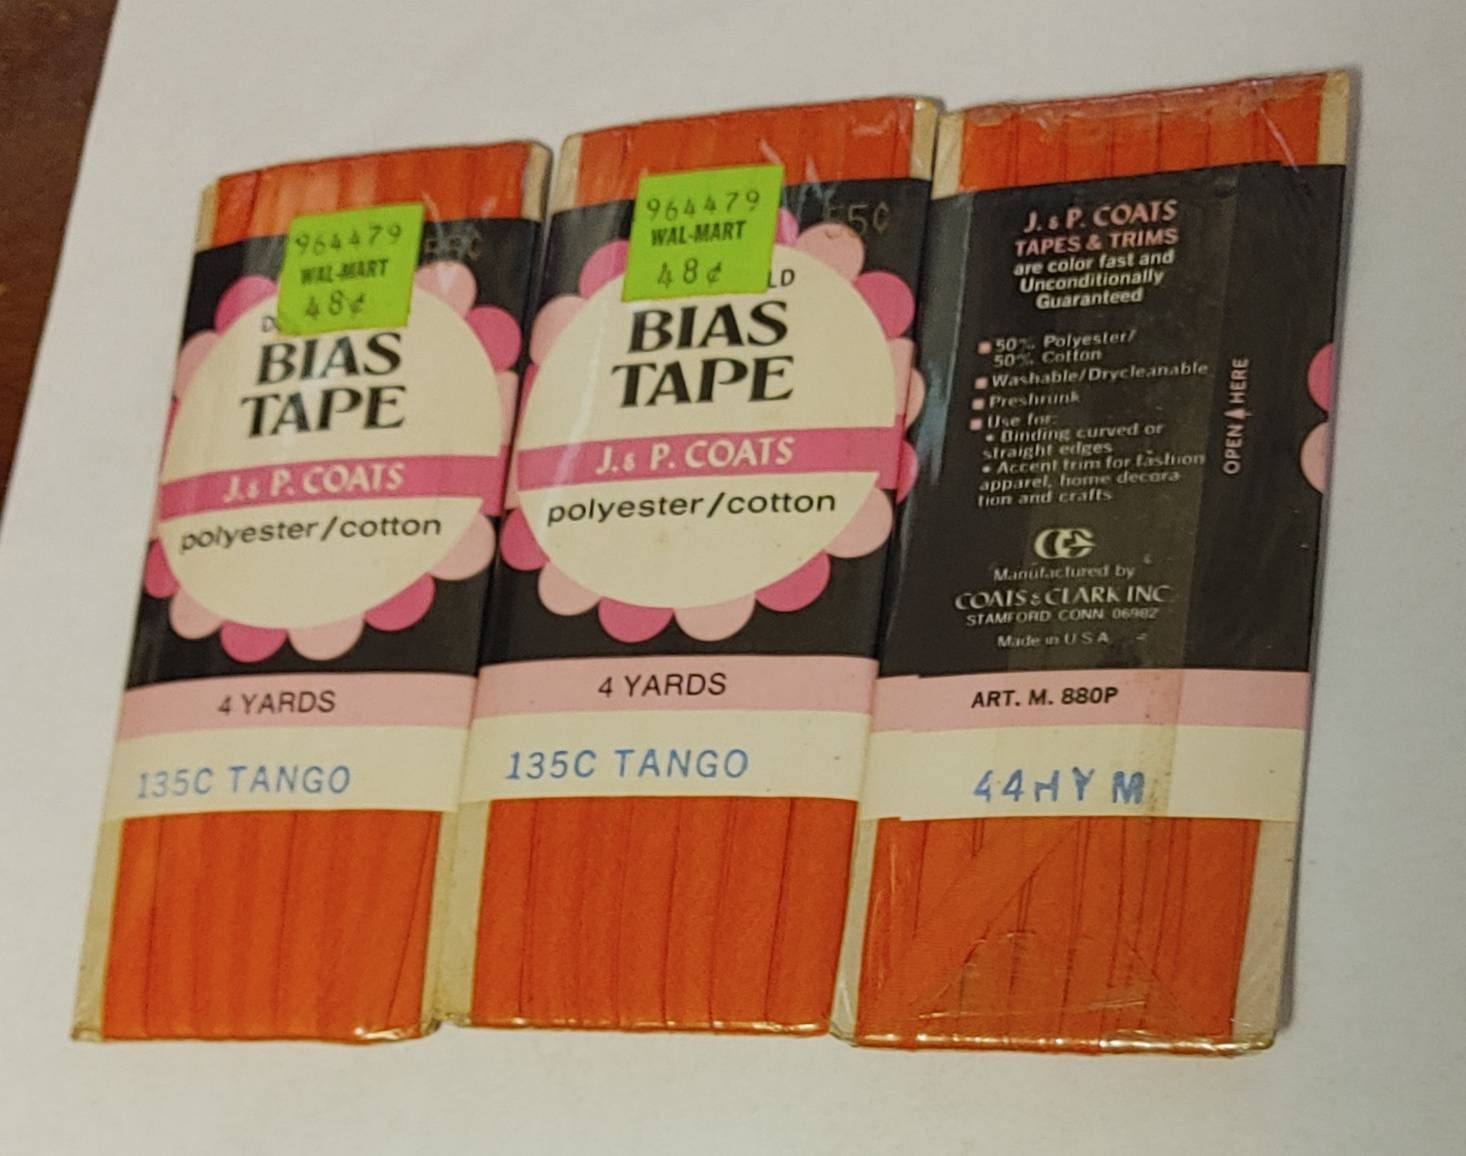 100 silk satin bias tape binding tape pink 4/5 unfold 16momme